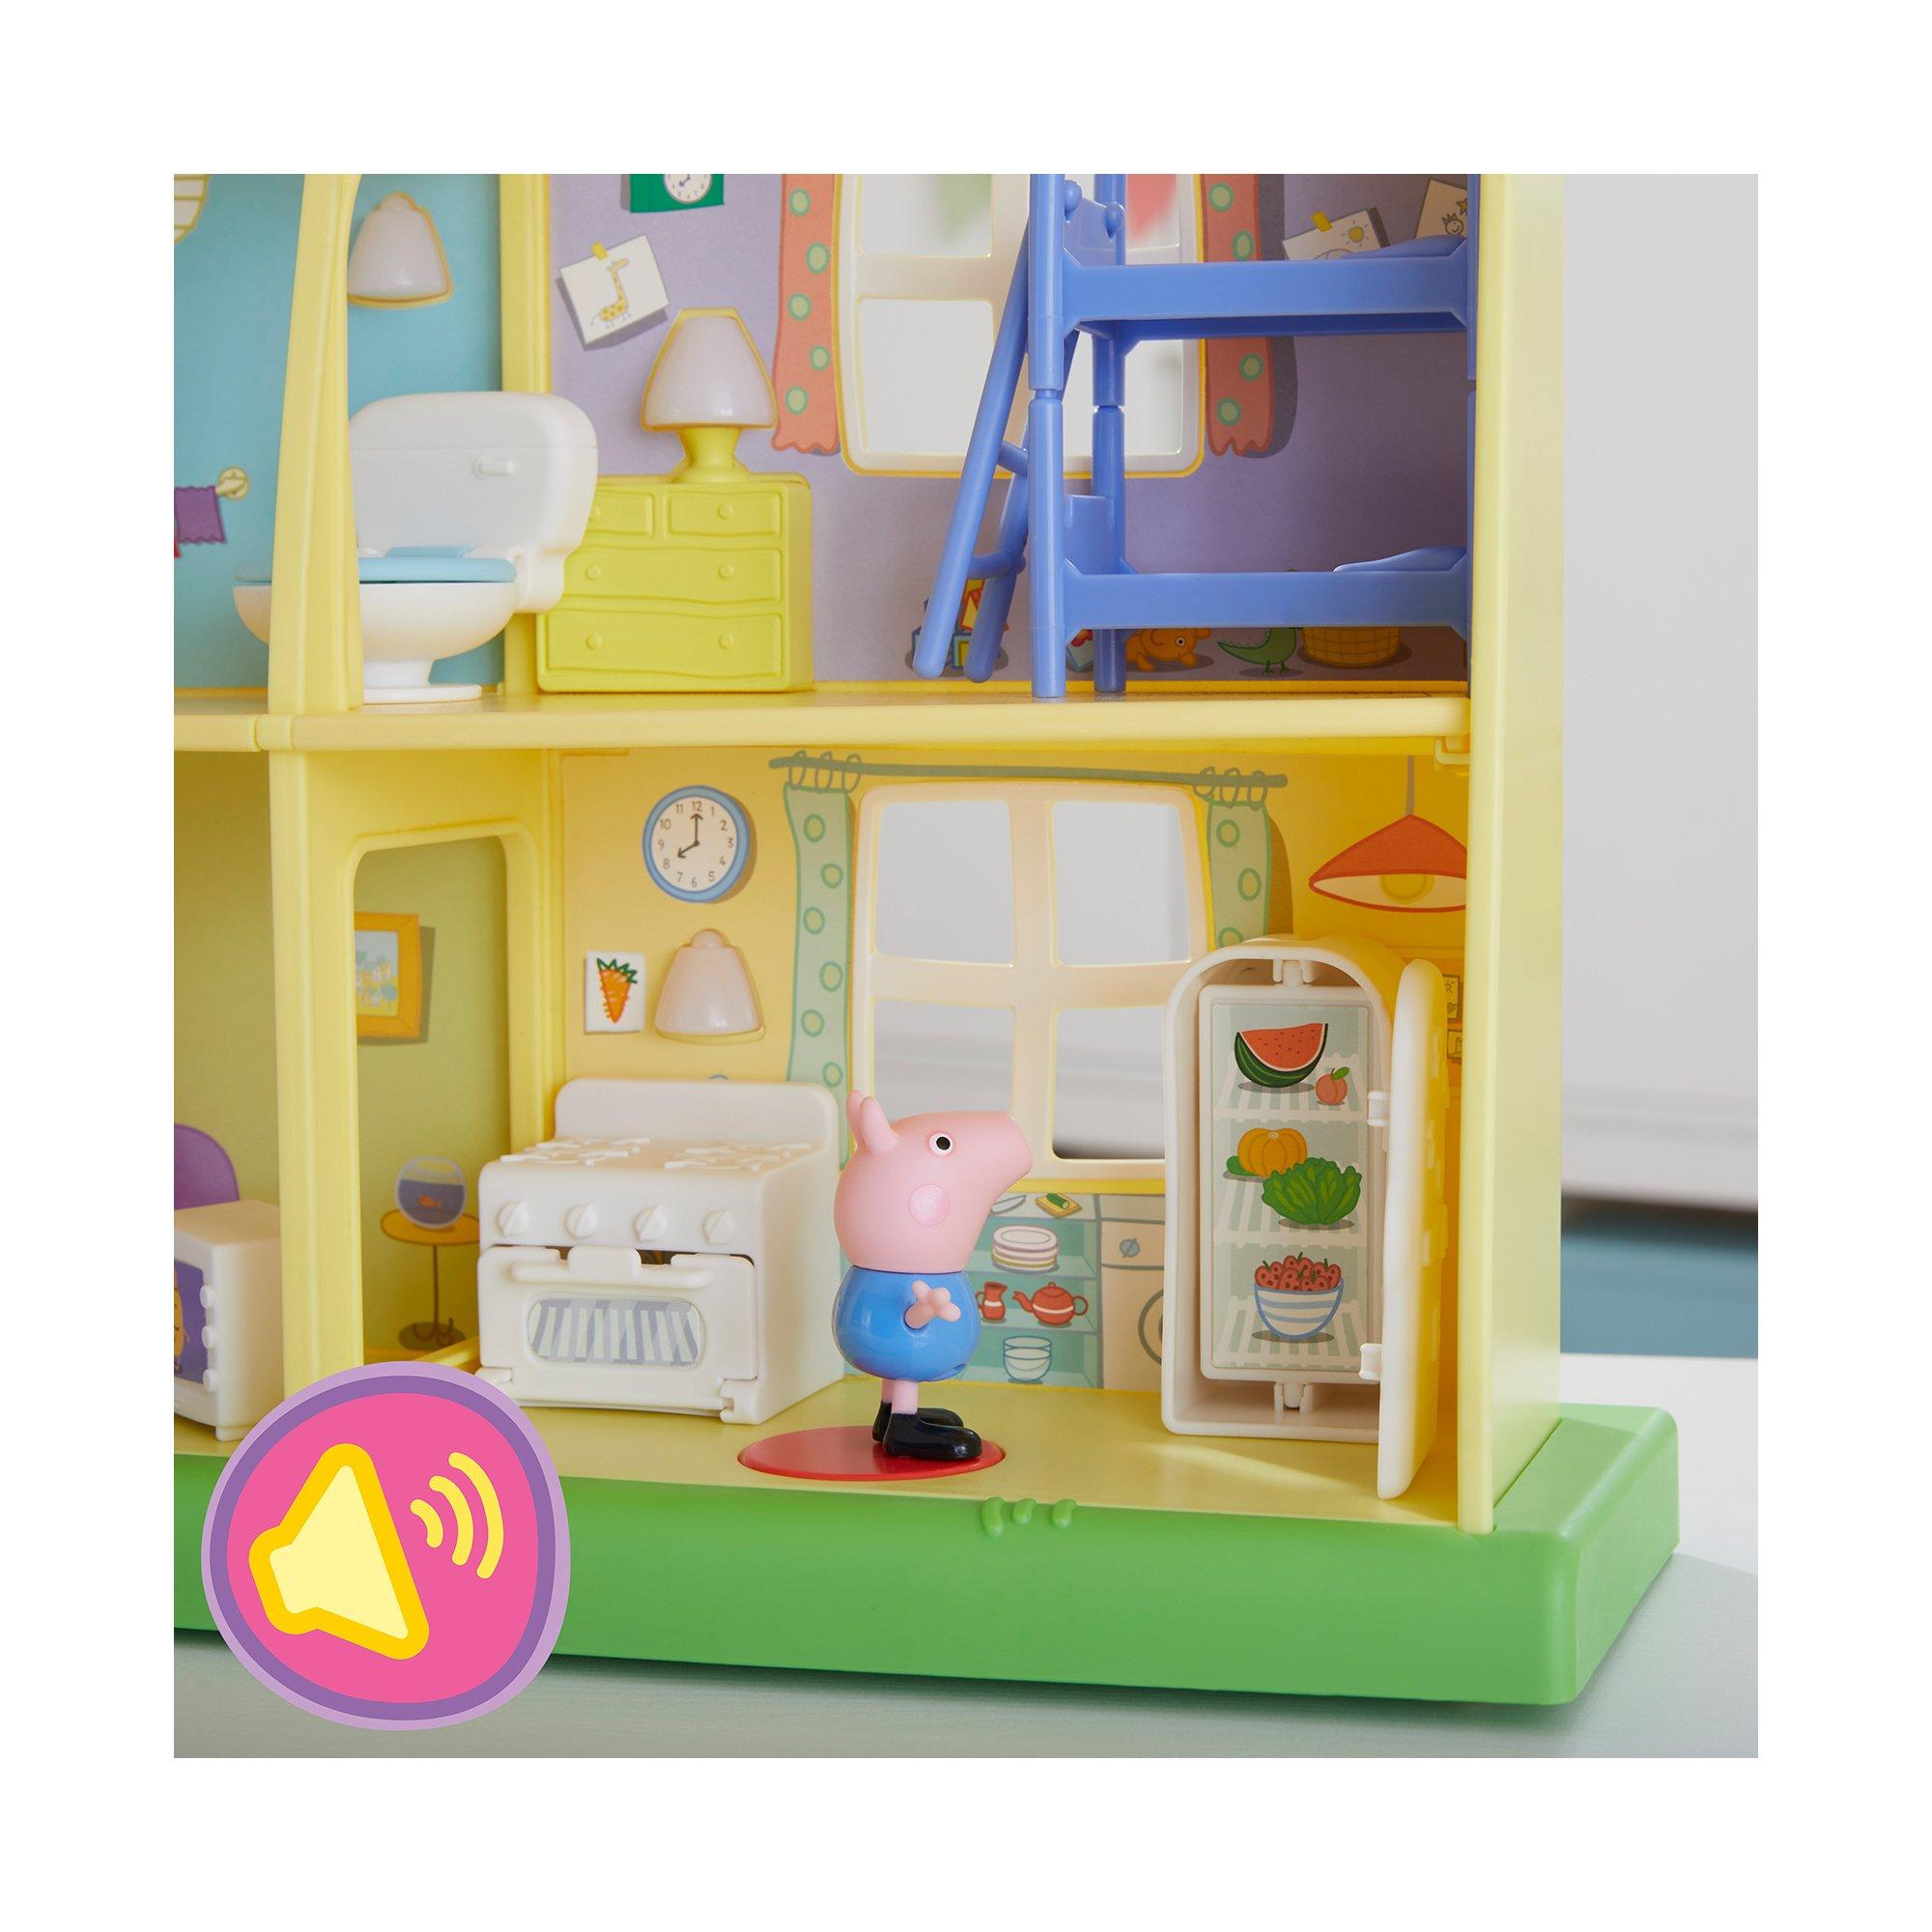 Hasbro  Peppa Pig, La maison du jour et de la nuit de Peppa 